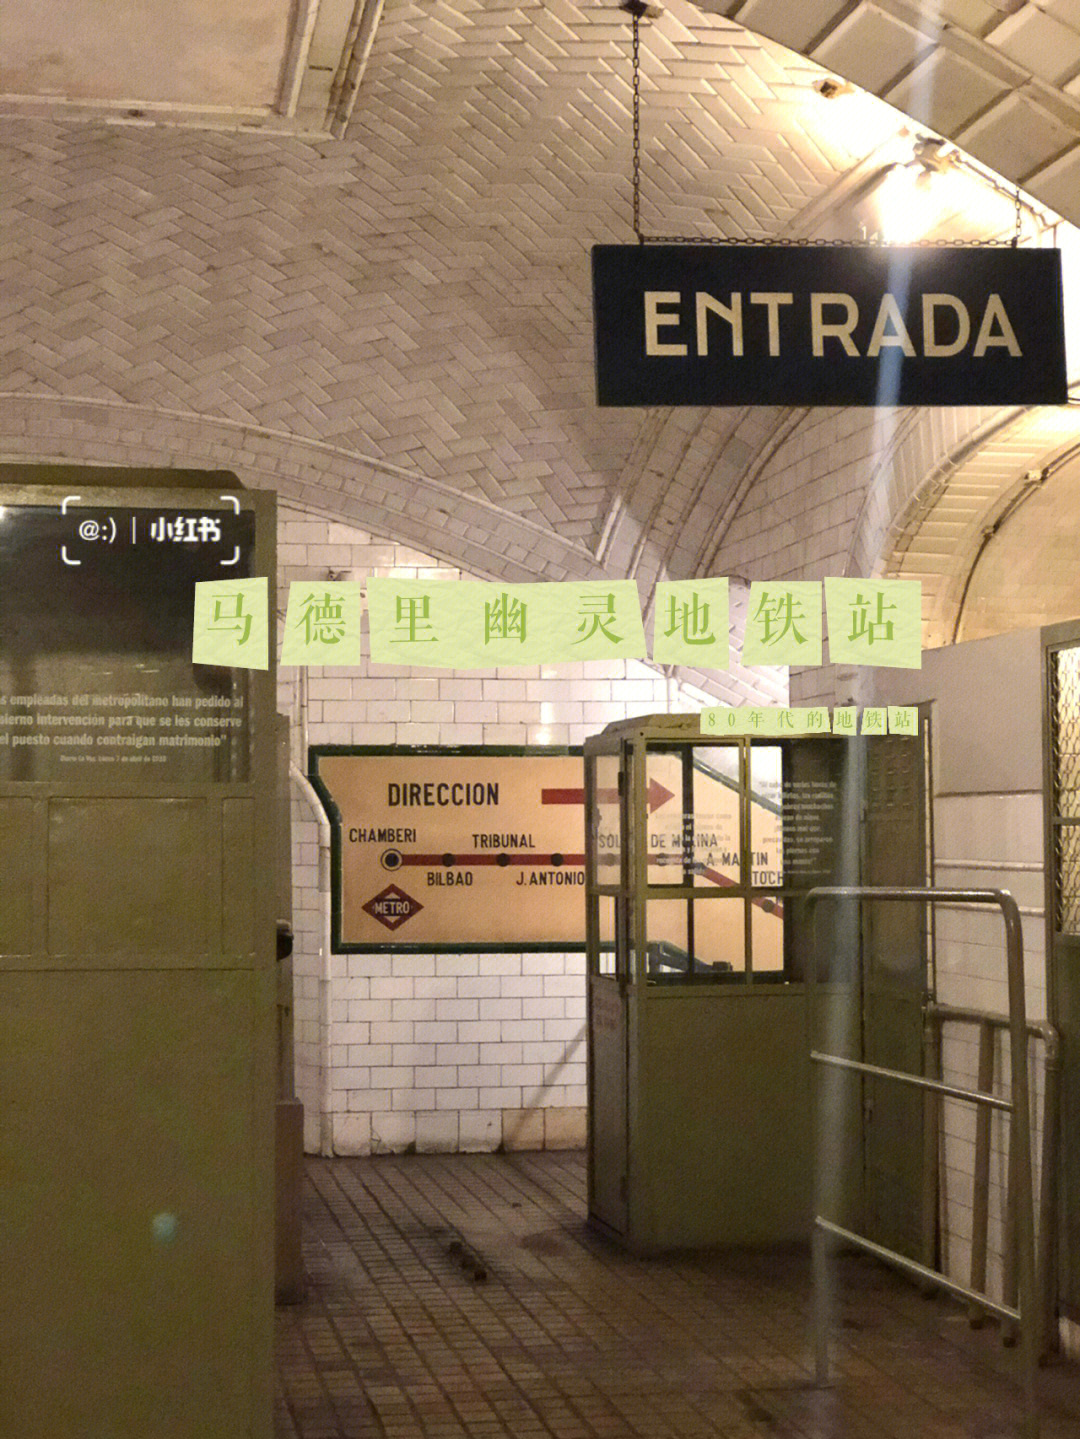 马德里地铁广告图片